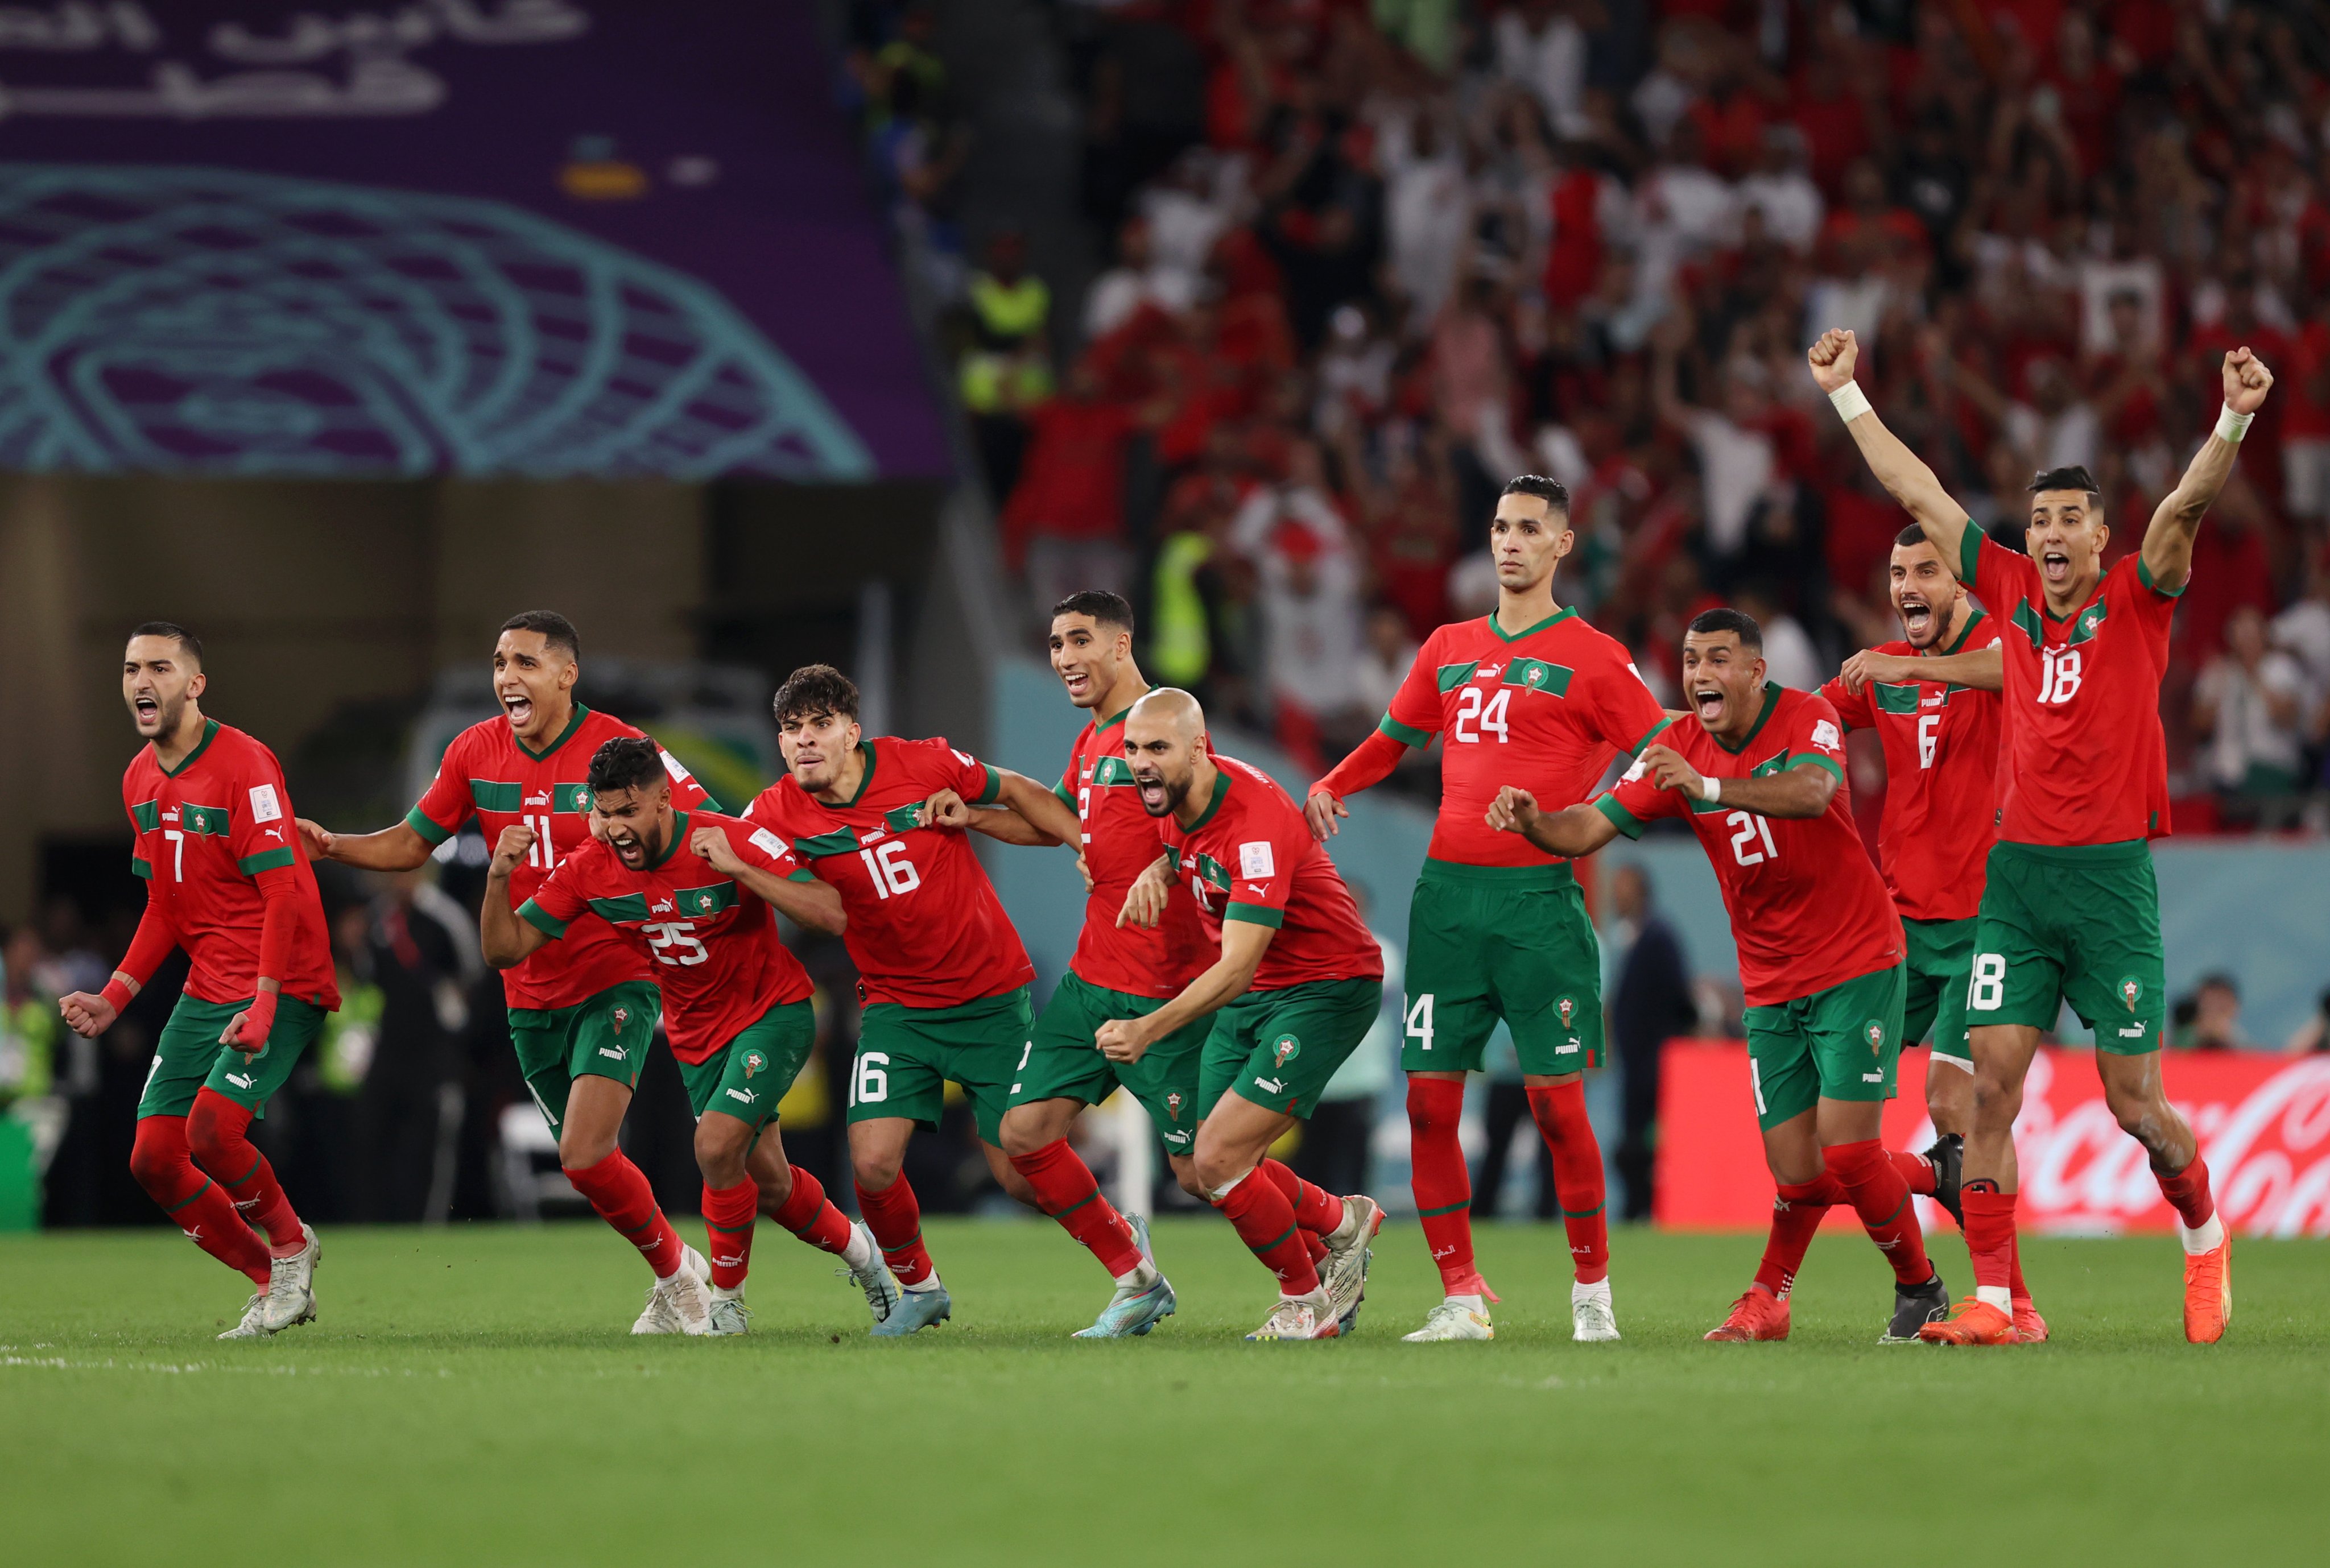 Jugadores de la selección de fútbol de Marruecos festejan la clasificación a cuartos de final en el Mundial de Qatar.jpeg